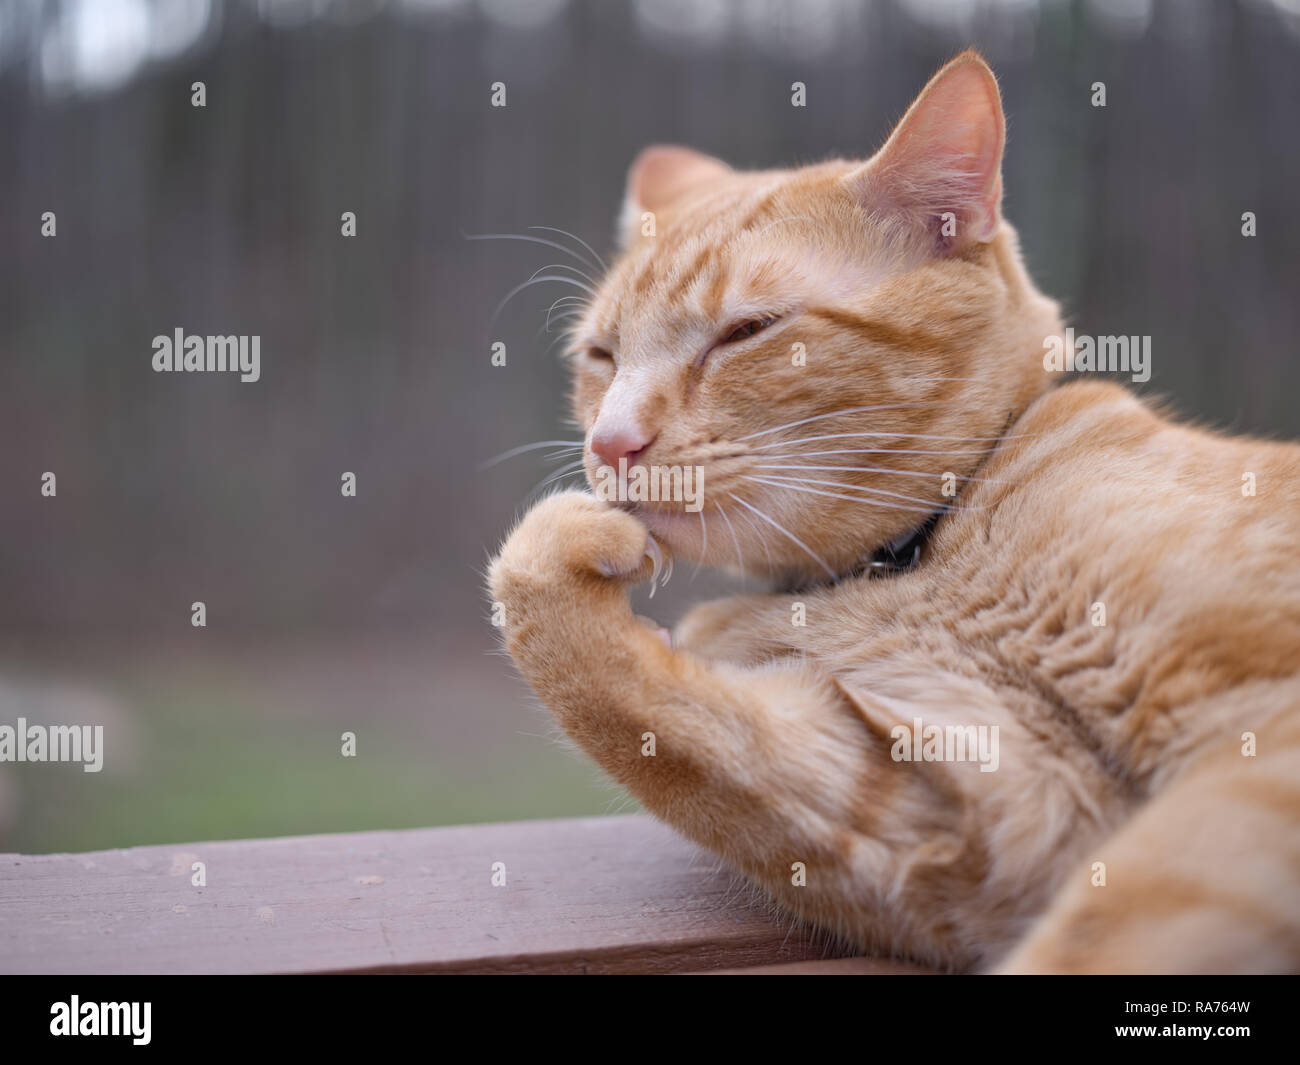 Expressive thoughtful orange cat Stock Photo